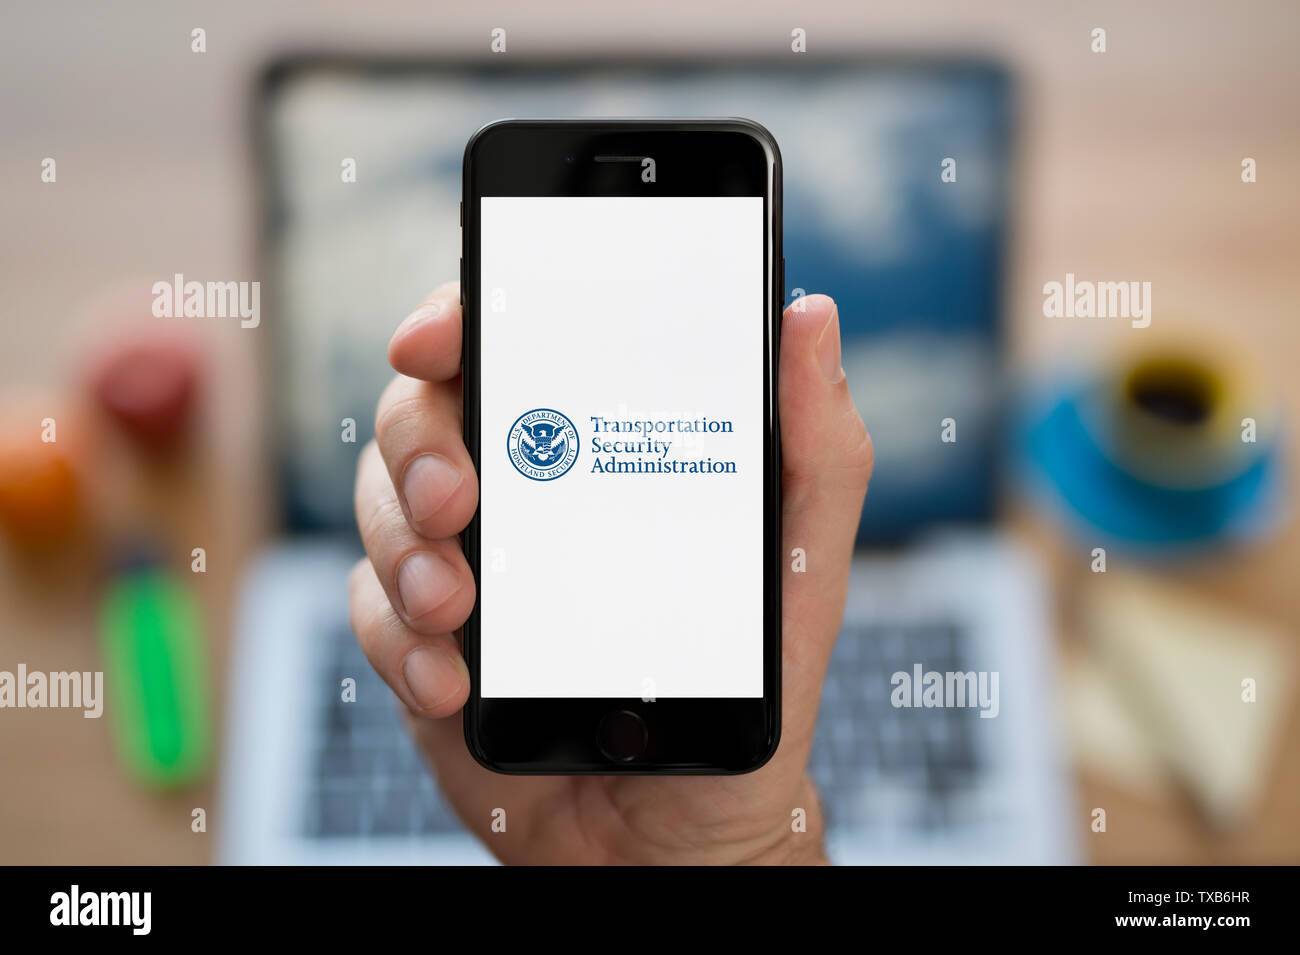 Un uomo guarda al suo iPhone che visualizza la Transportation Security Administration (TSA) il logo (solo uso editoriale). Foto Stock